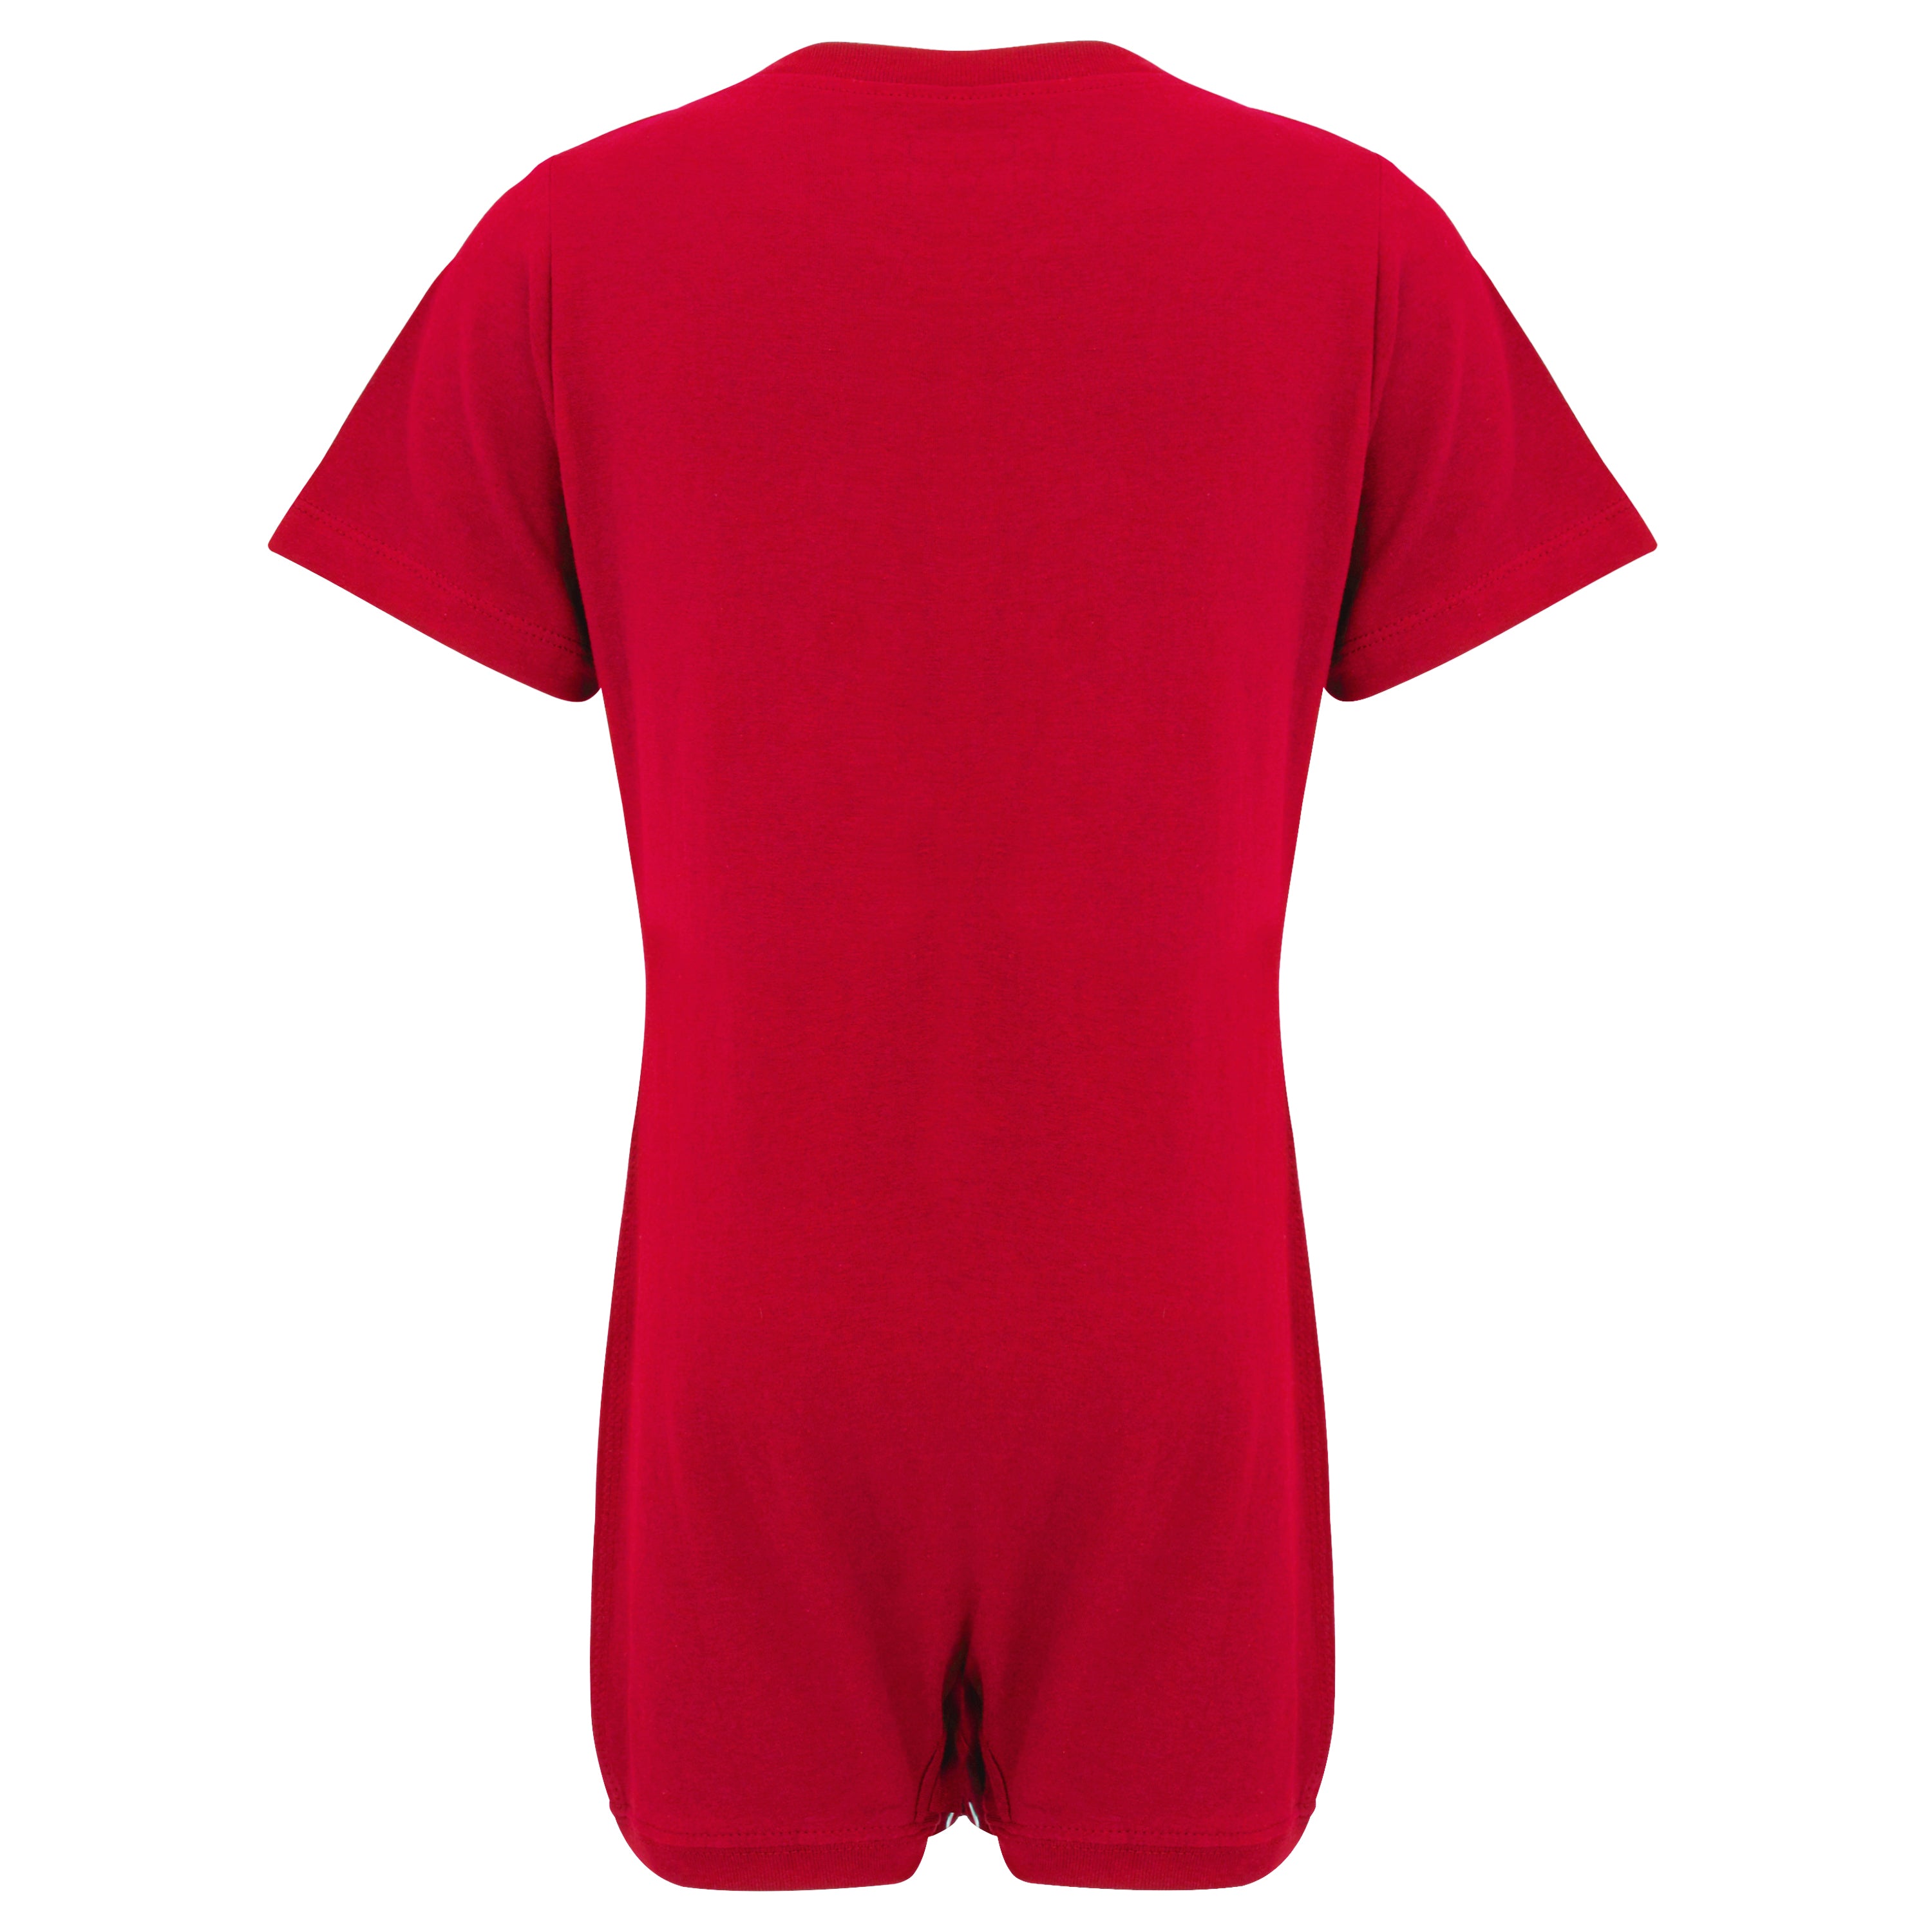 OW Rosa Bodysuit-Ultra Soft Cotton Short Sleeve Bodysuit Tops for